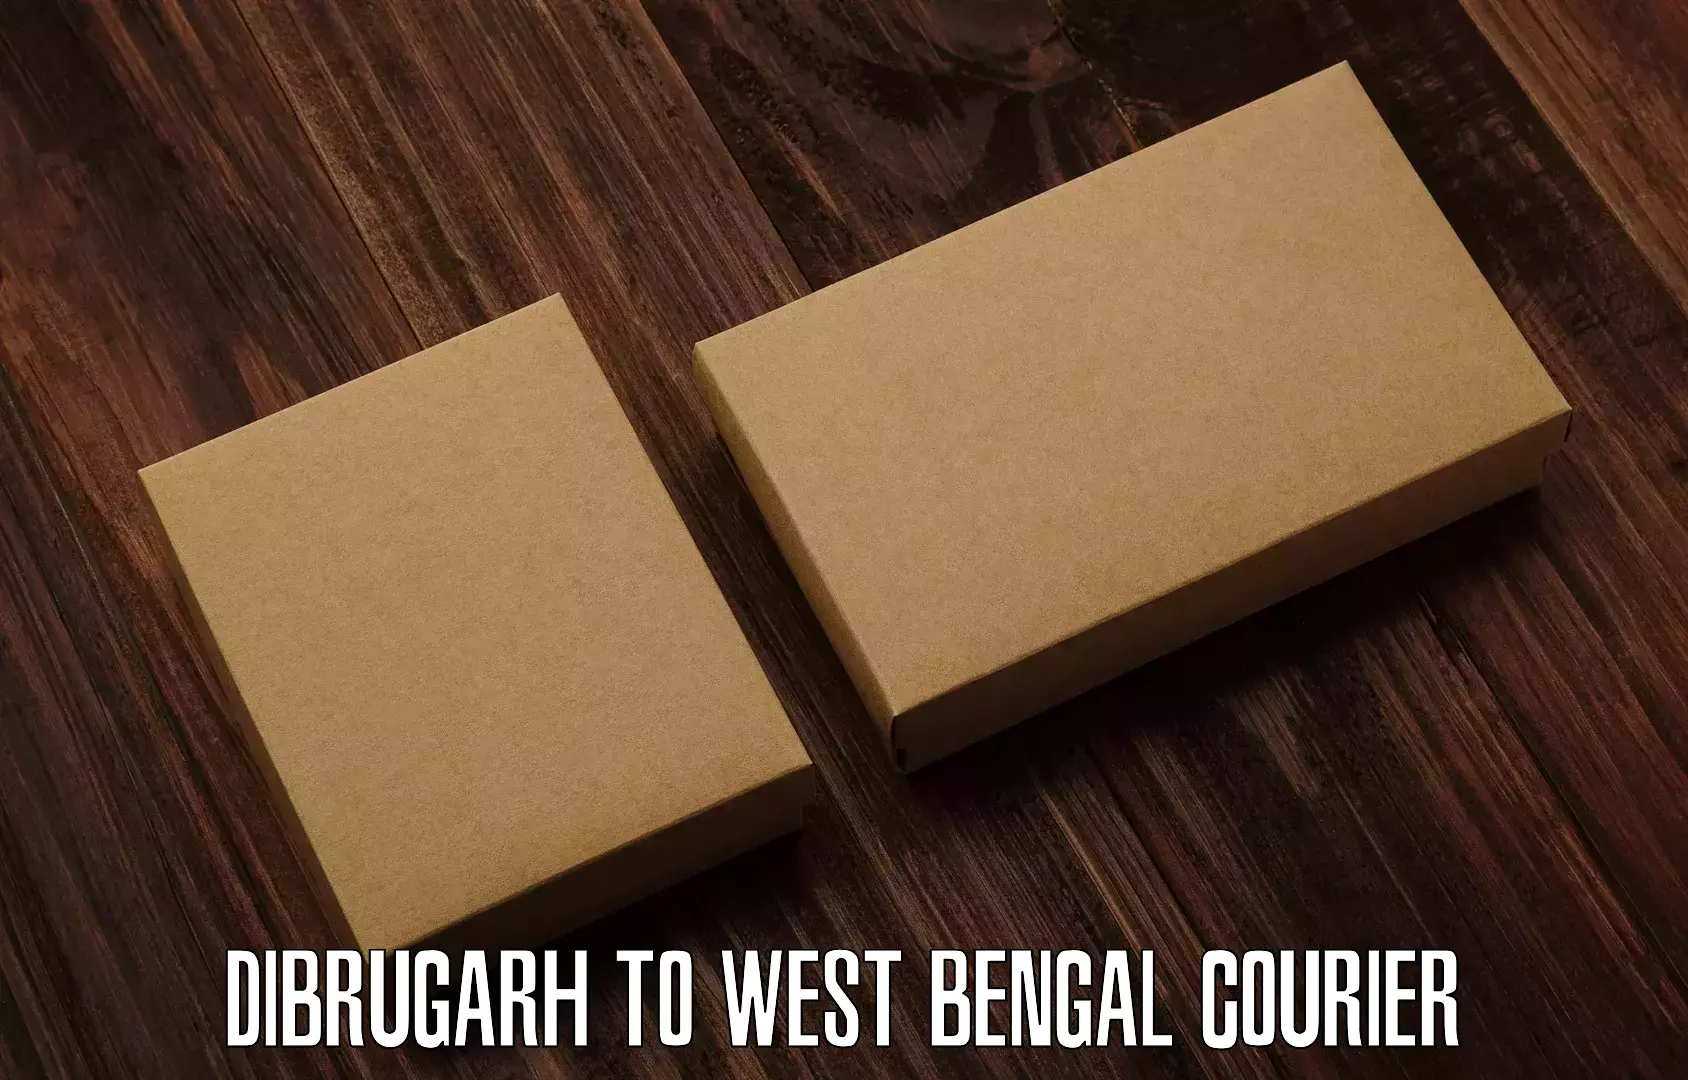 Efficient shipping platforms Dibrugarh to Gangarampur